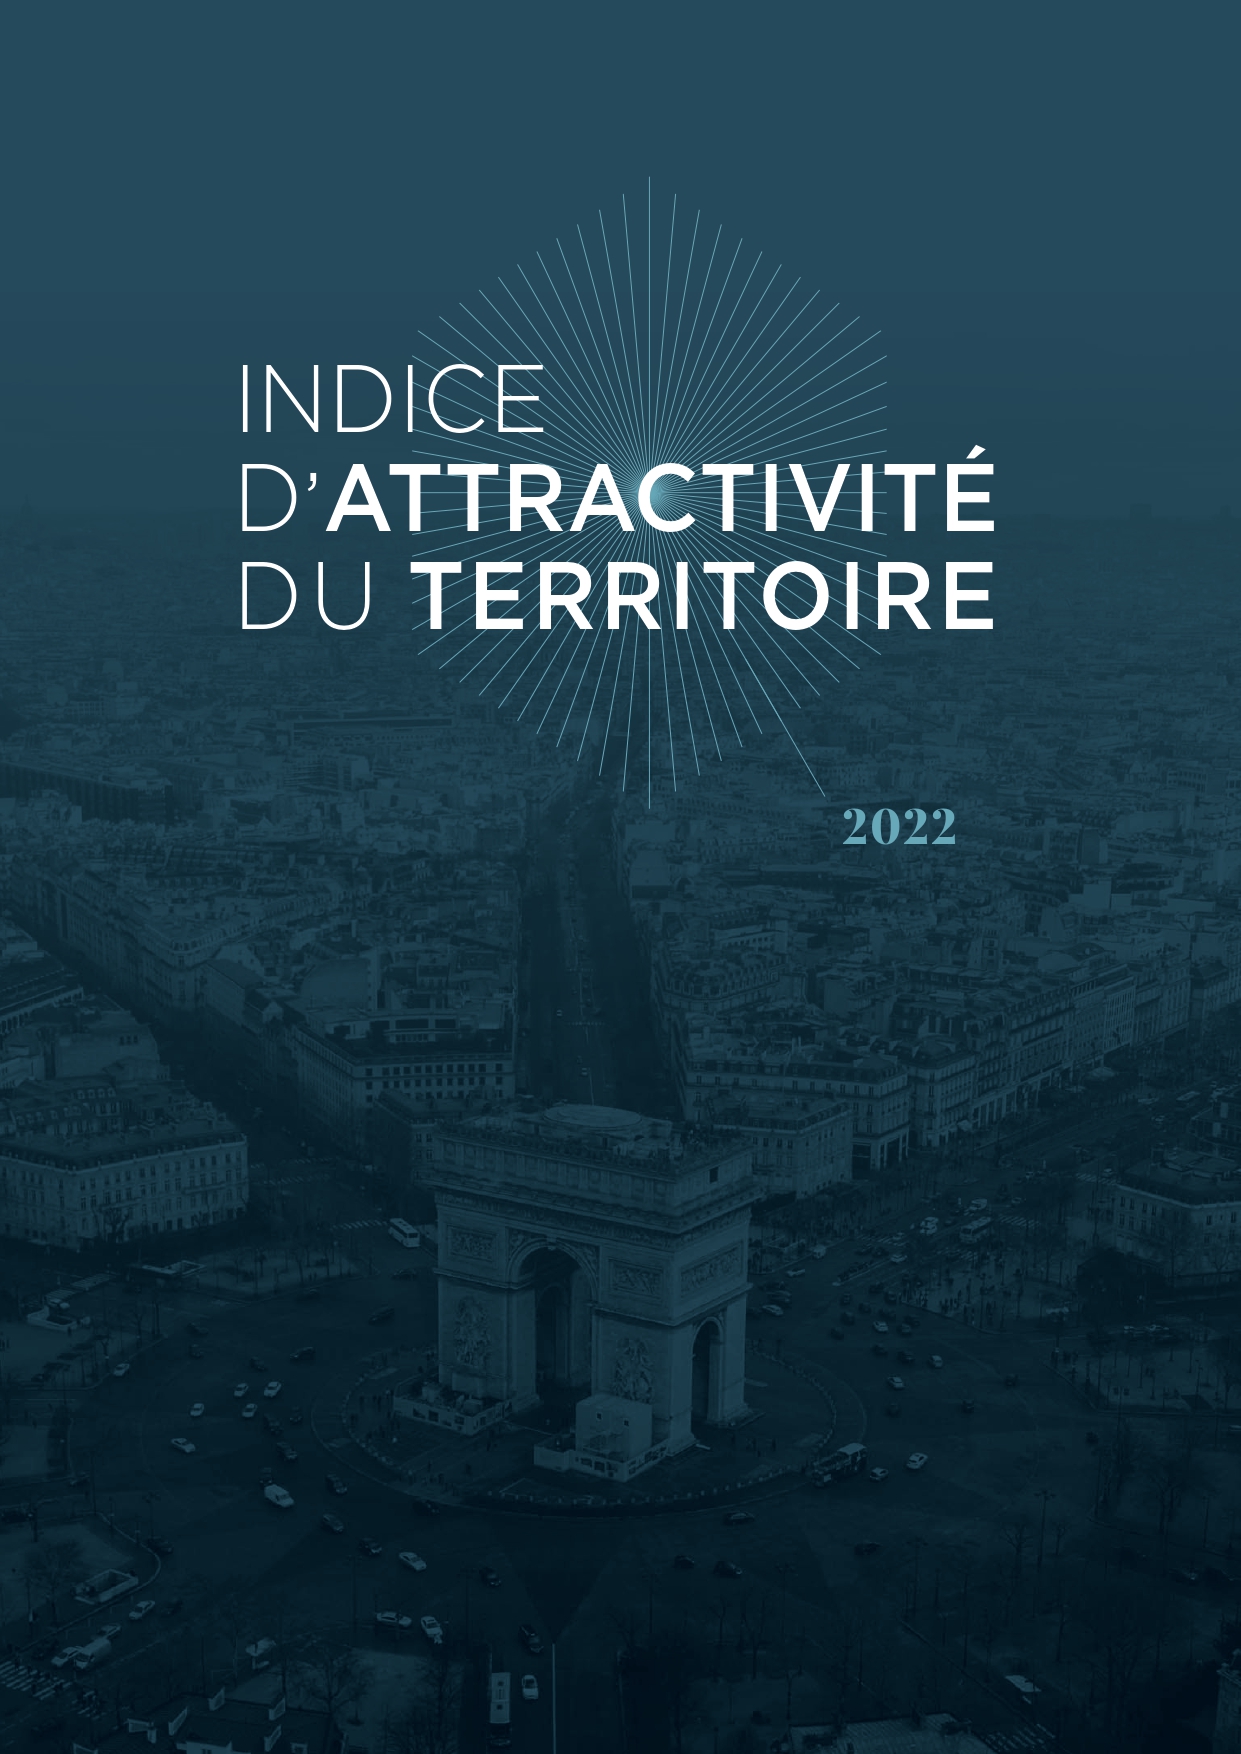 INDICE D'ATTRACTIVITE DU TERRITOIRE 2022